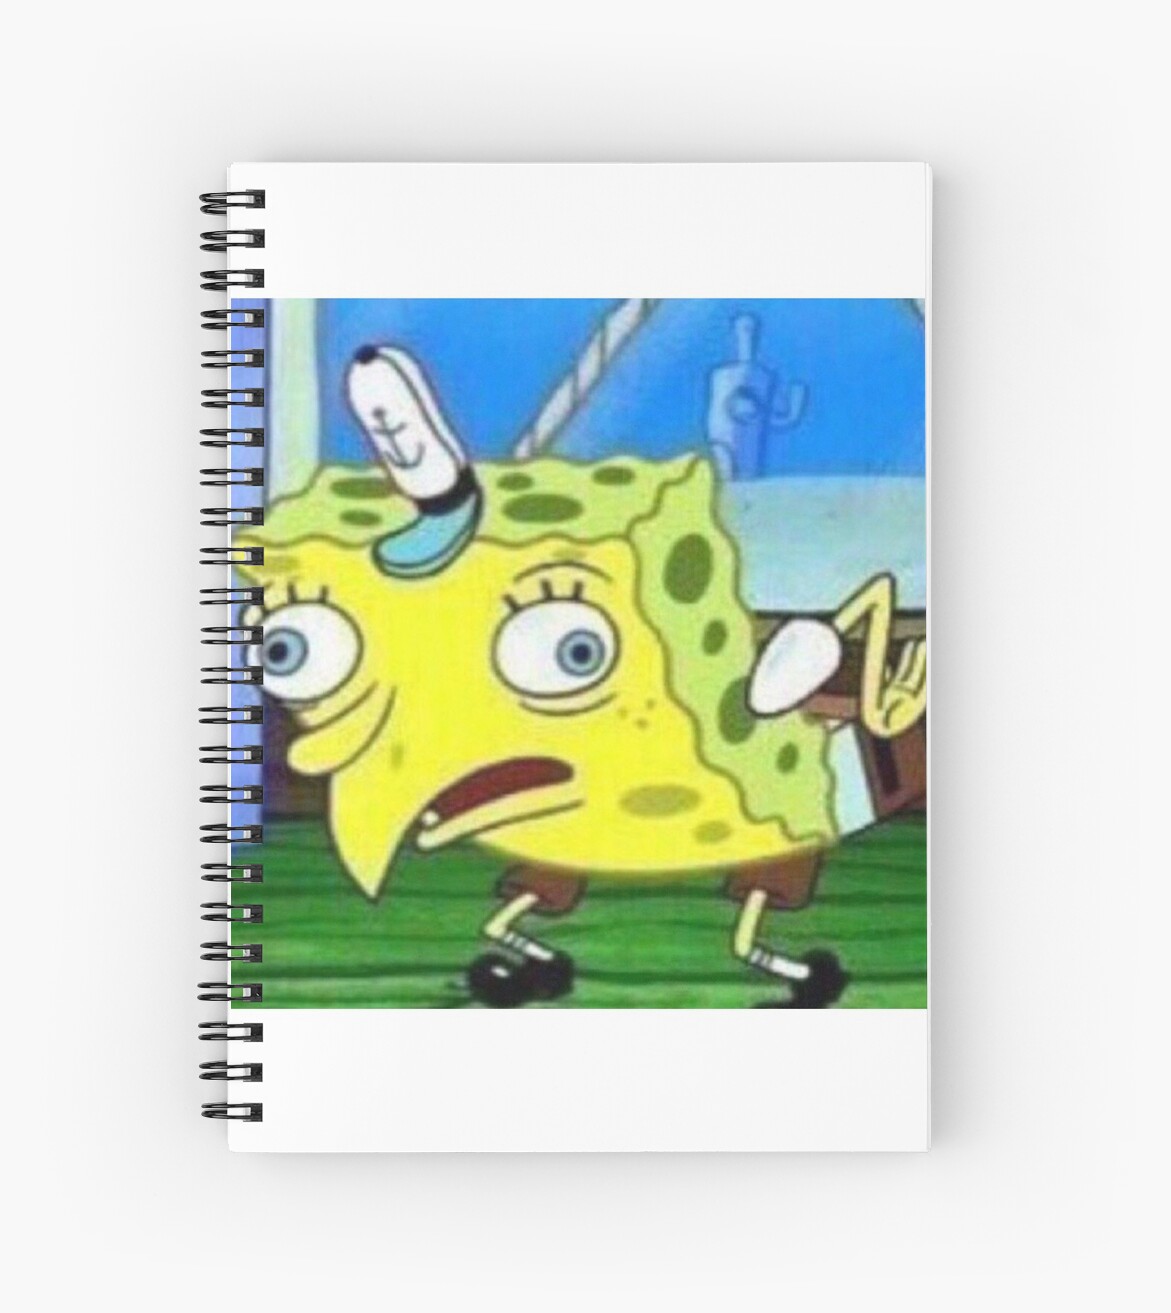 Mocking Spongebob Meme Spiral Notebooks By Memekween Redbubble